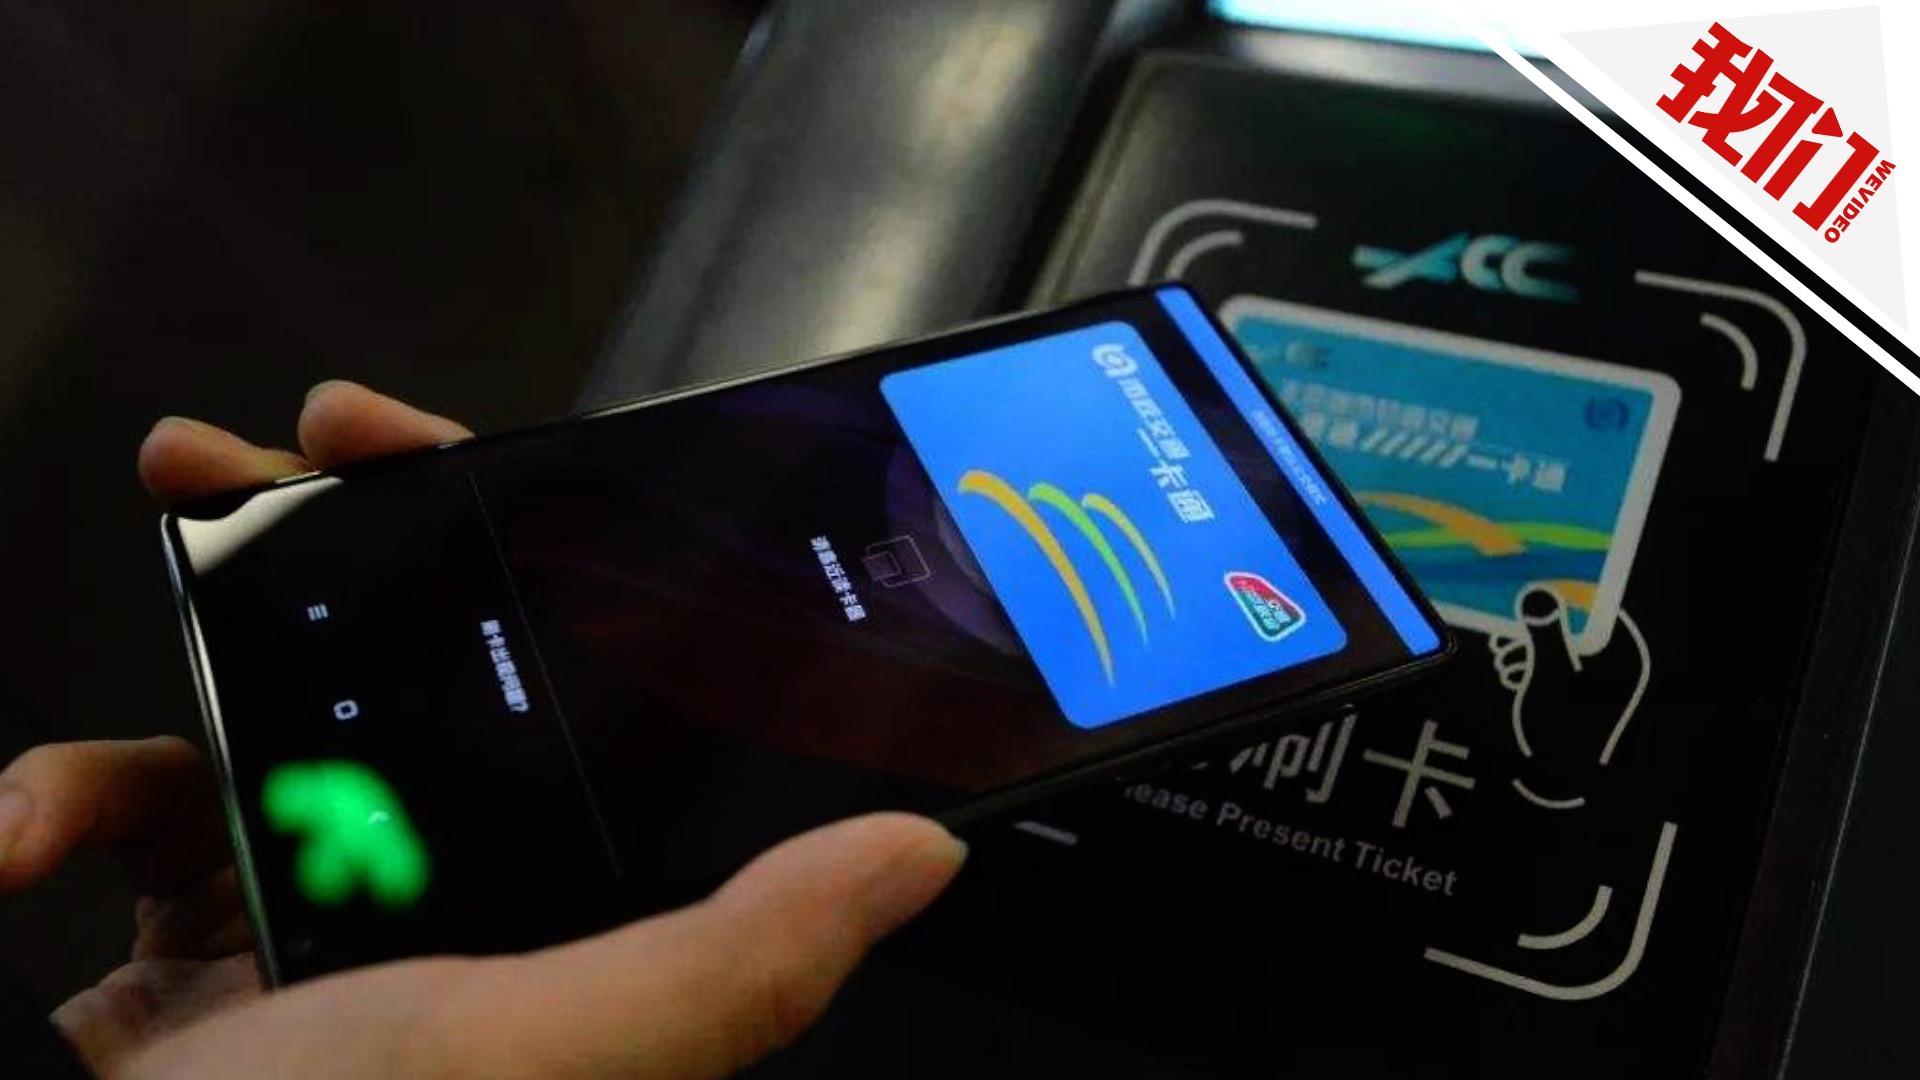 ▲移动支付时代，手机一卡通开卡费已失去存在的基础，北京交通委取消“开卡费”也是顺应了时代发展潮流。资料图。图片来源：新京报网